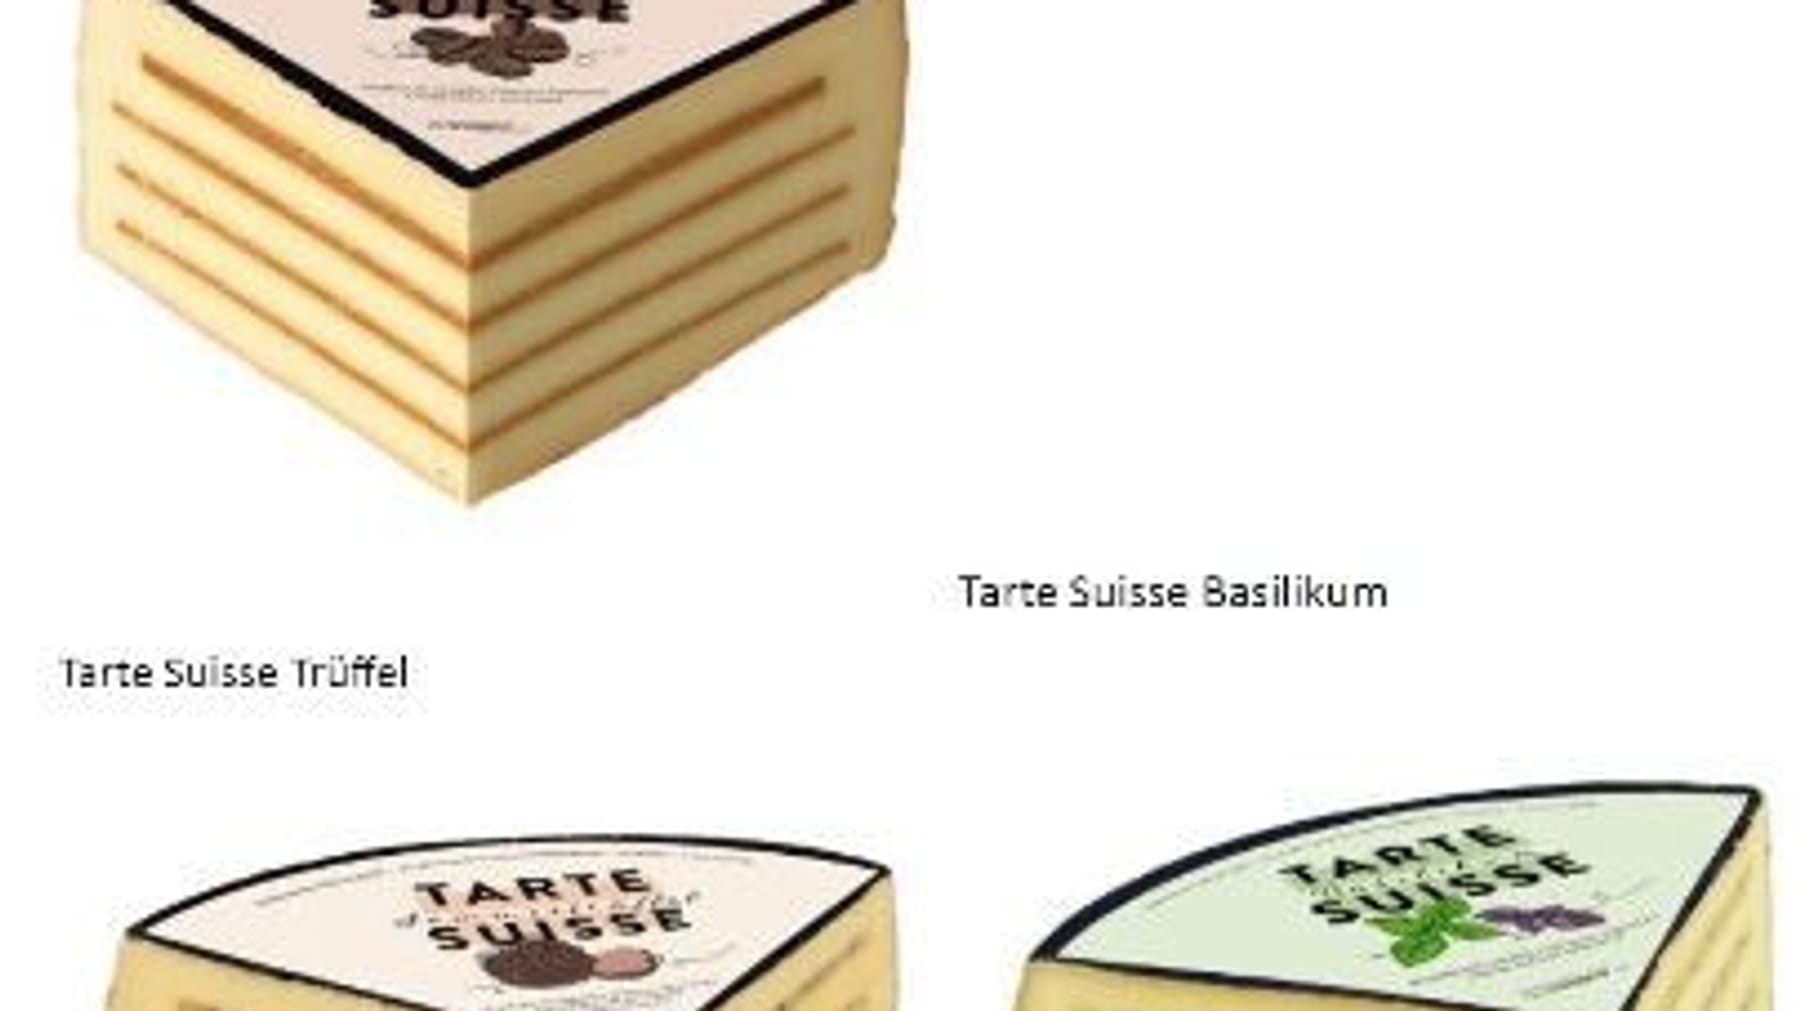 Edeka: in Listerien Rückruf Tarte Milbona Käse und Lidl bei Suisse und